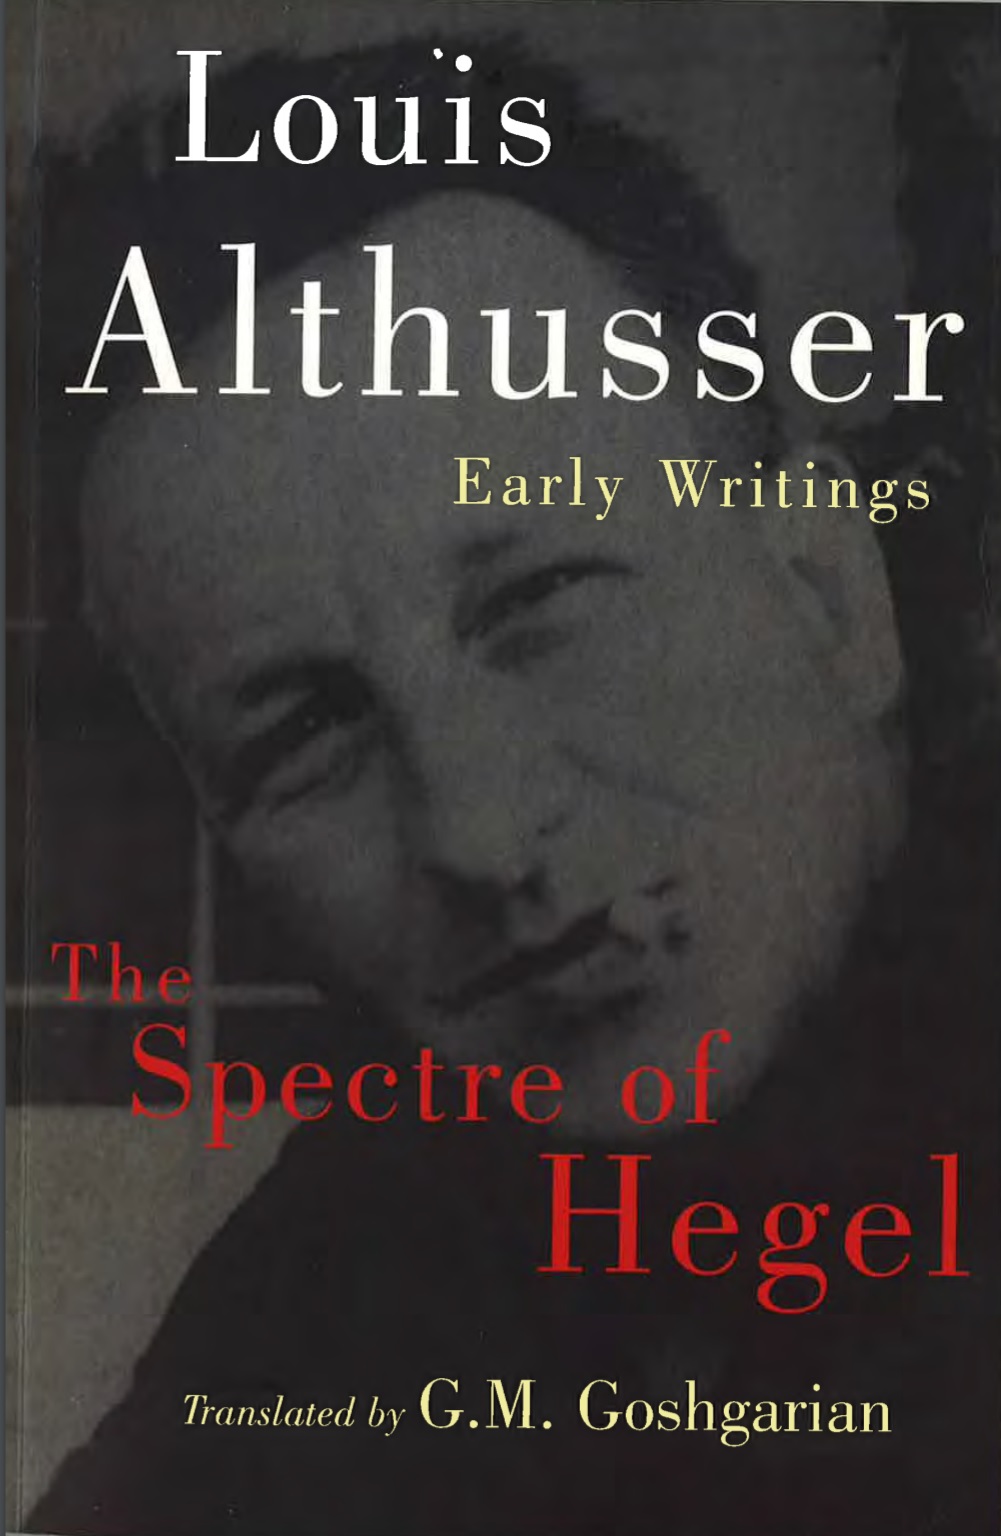 Louis-althusser-the-spectre-of-hegel-early-writings-theoryleaks.jpg